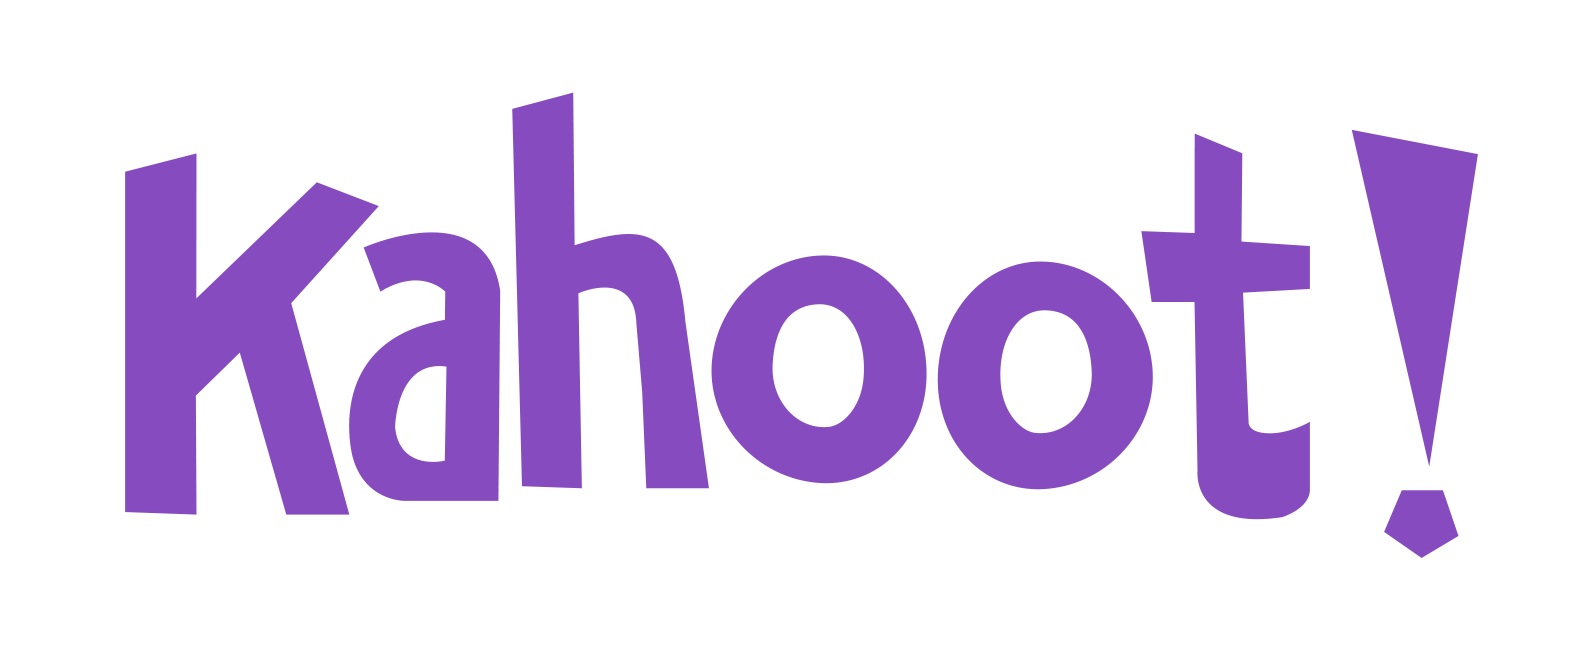 logo_kahoot_purple_transparent.png